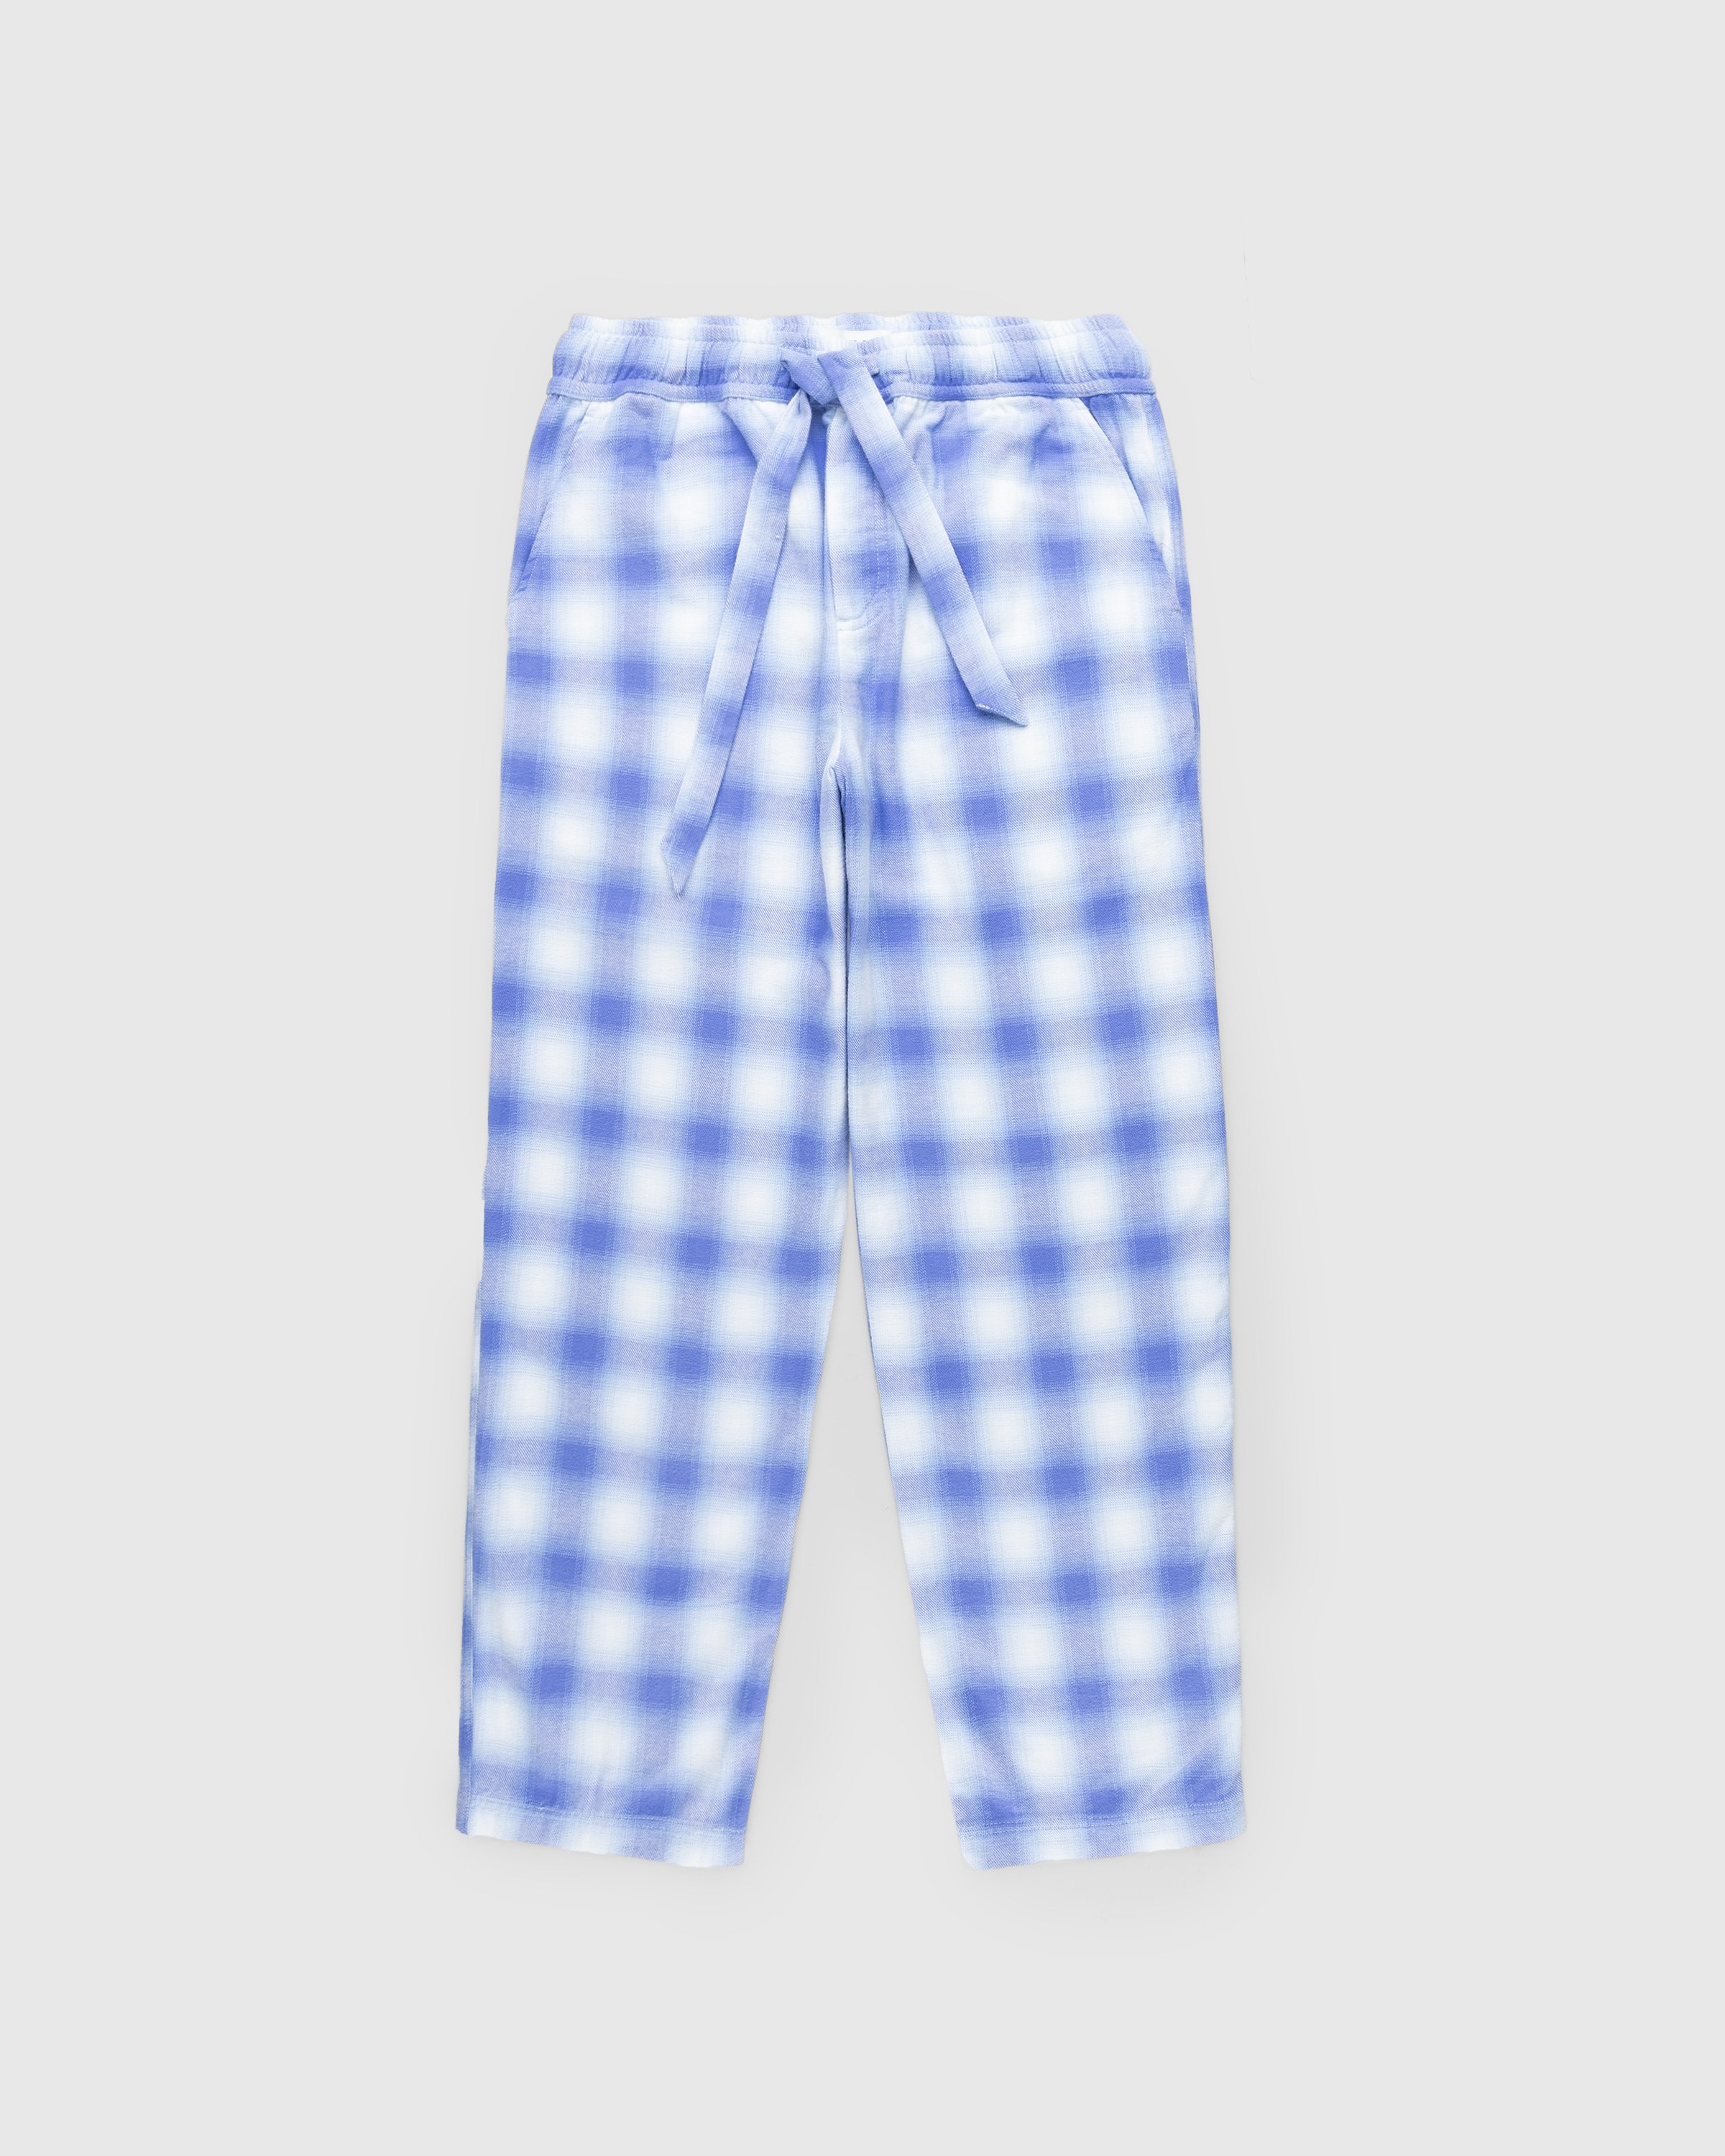 Tekla - Flannel Pyjamas Pants Light Blue Plaid - Clothing - Blue - Image 1